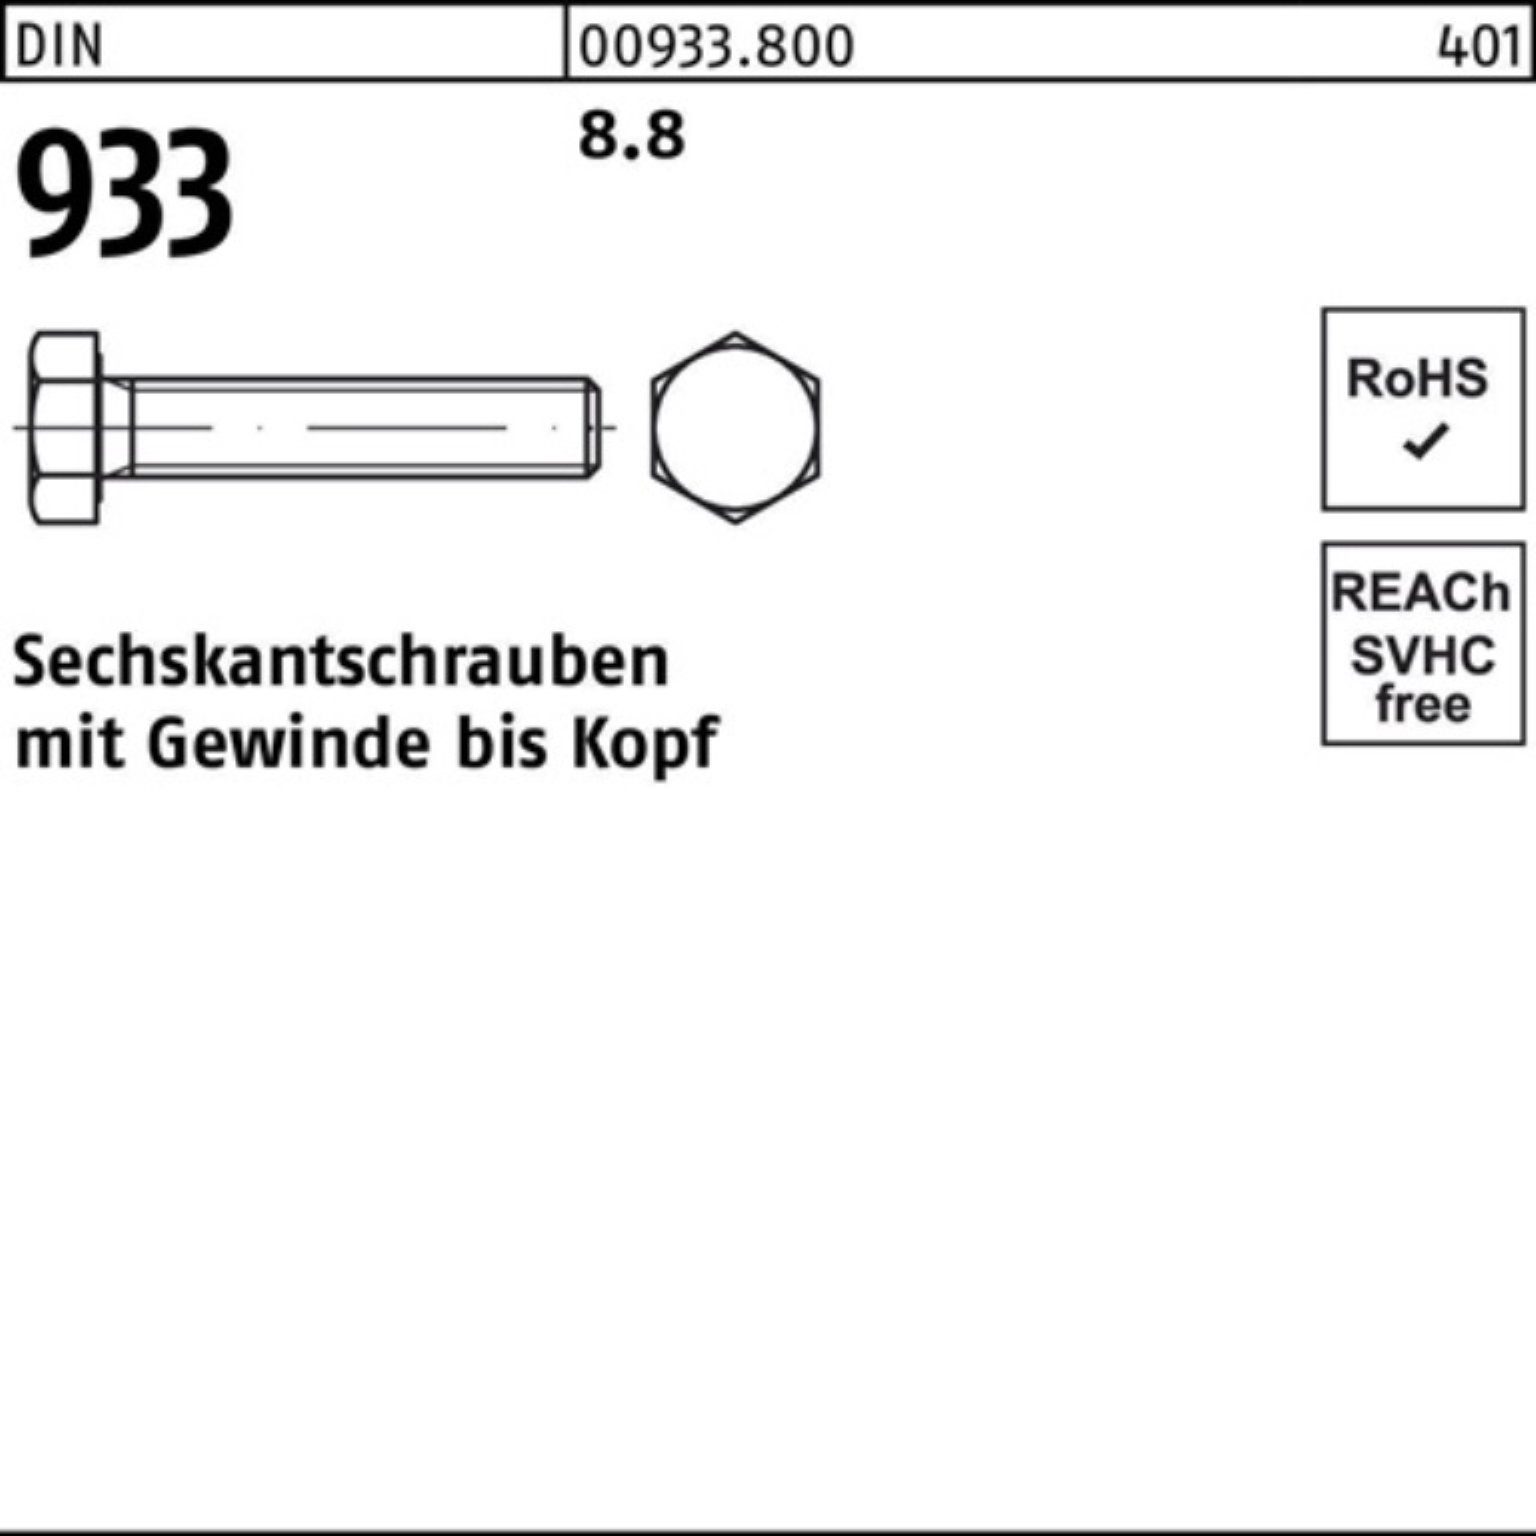 Sechskantschraube 1 500 DIN 8.8 M30x Reyher Stück Sechskantschraube 100er VG 933 DIN Pack 933